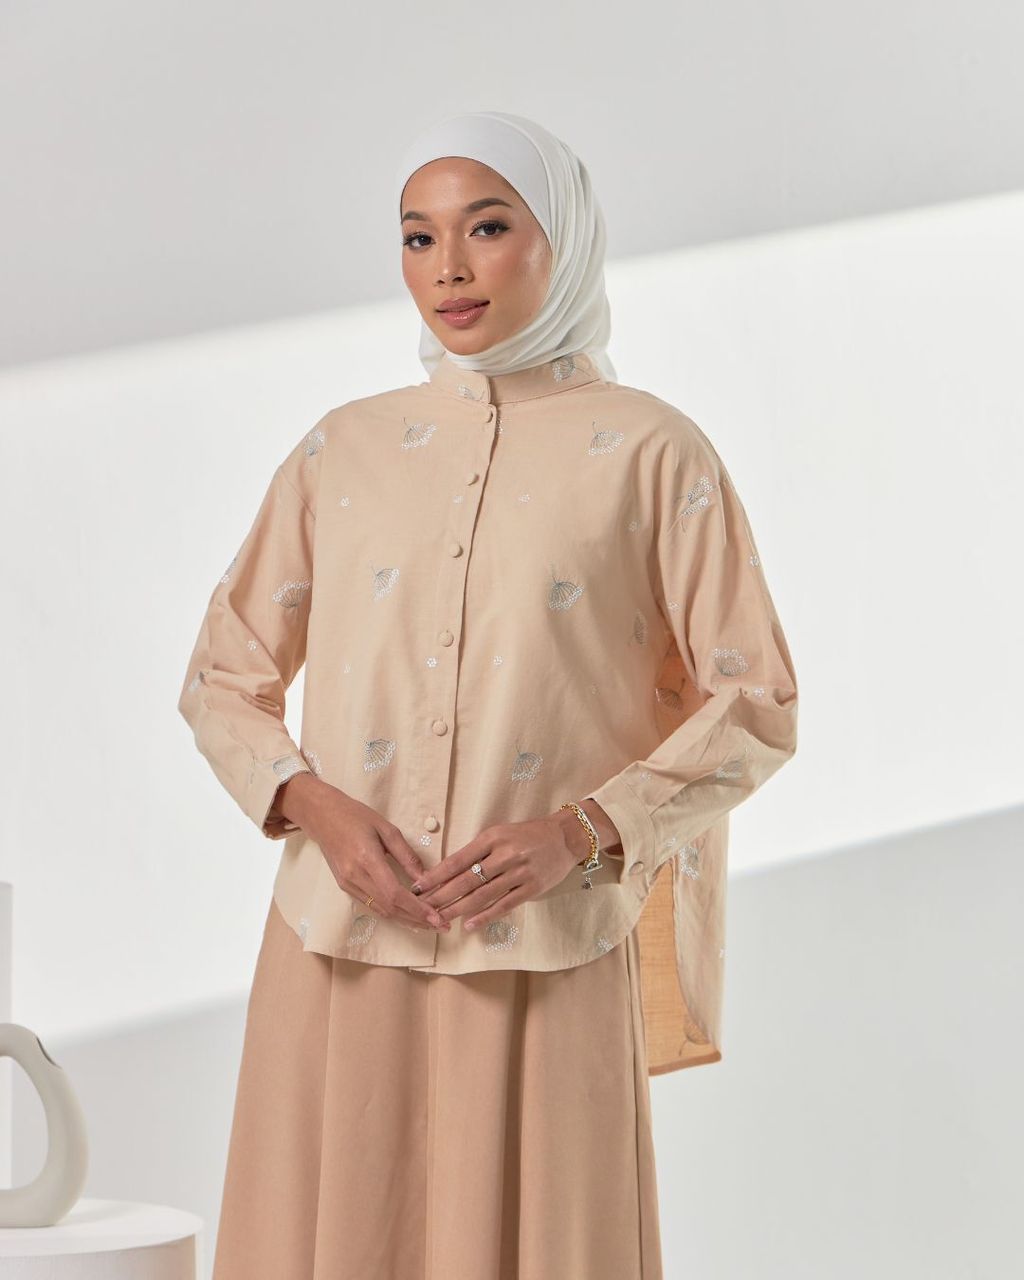 haura-wear-estelle-blouse-lengan panjang-kemeja labuh-baju labuh-tunic-kaftan-midi-dress-blouse-shirt-long-sleeve-baju-muslimah-baju-perempuan-shirt-blouse-baju (2)